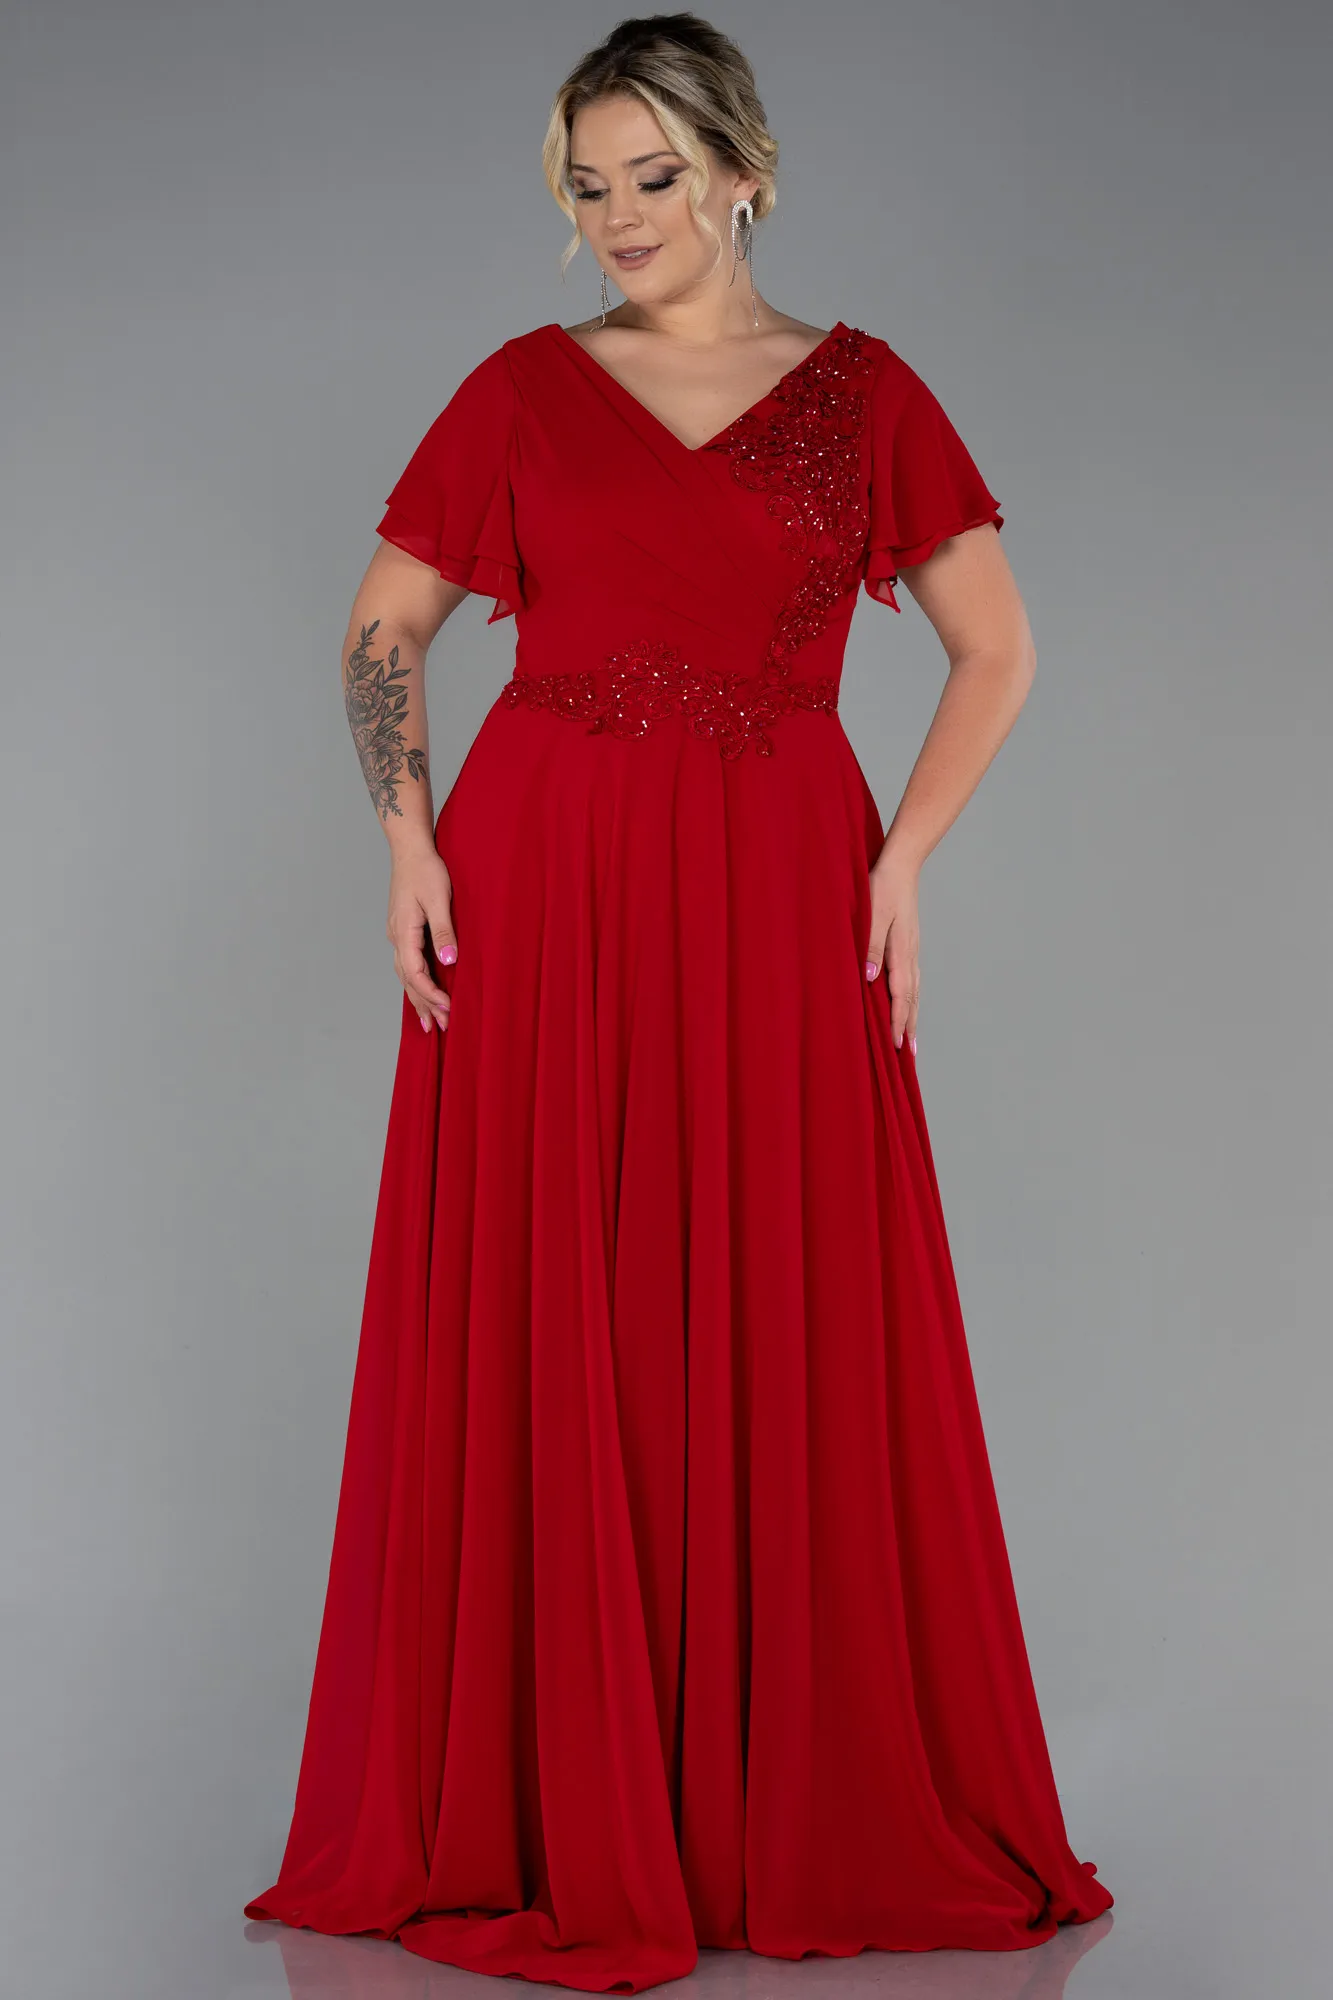 Red-Long Chiffon Plus Size Evening Dress ABU2576